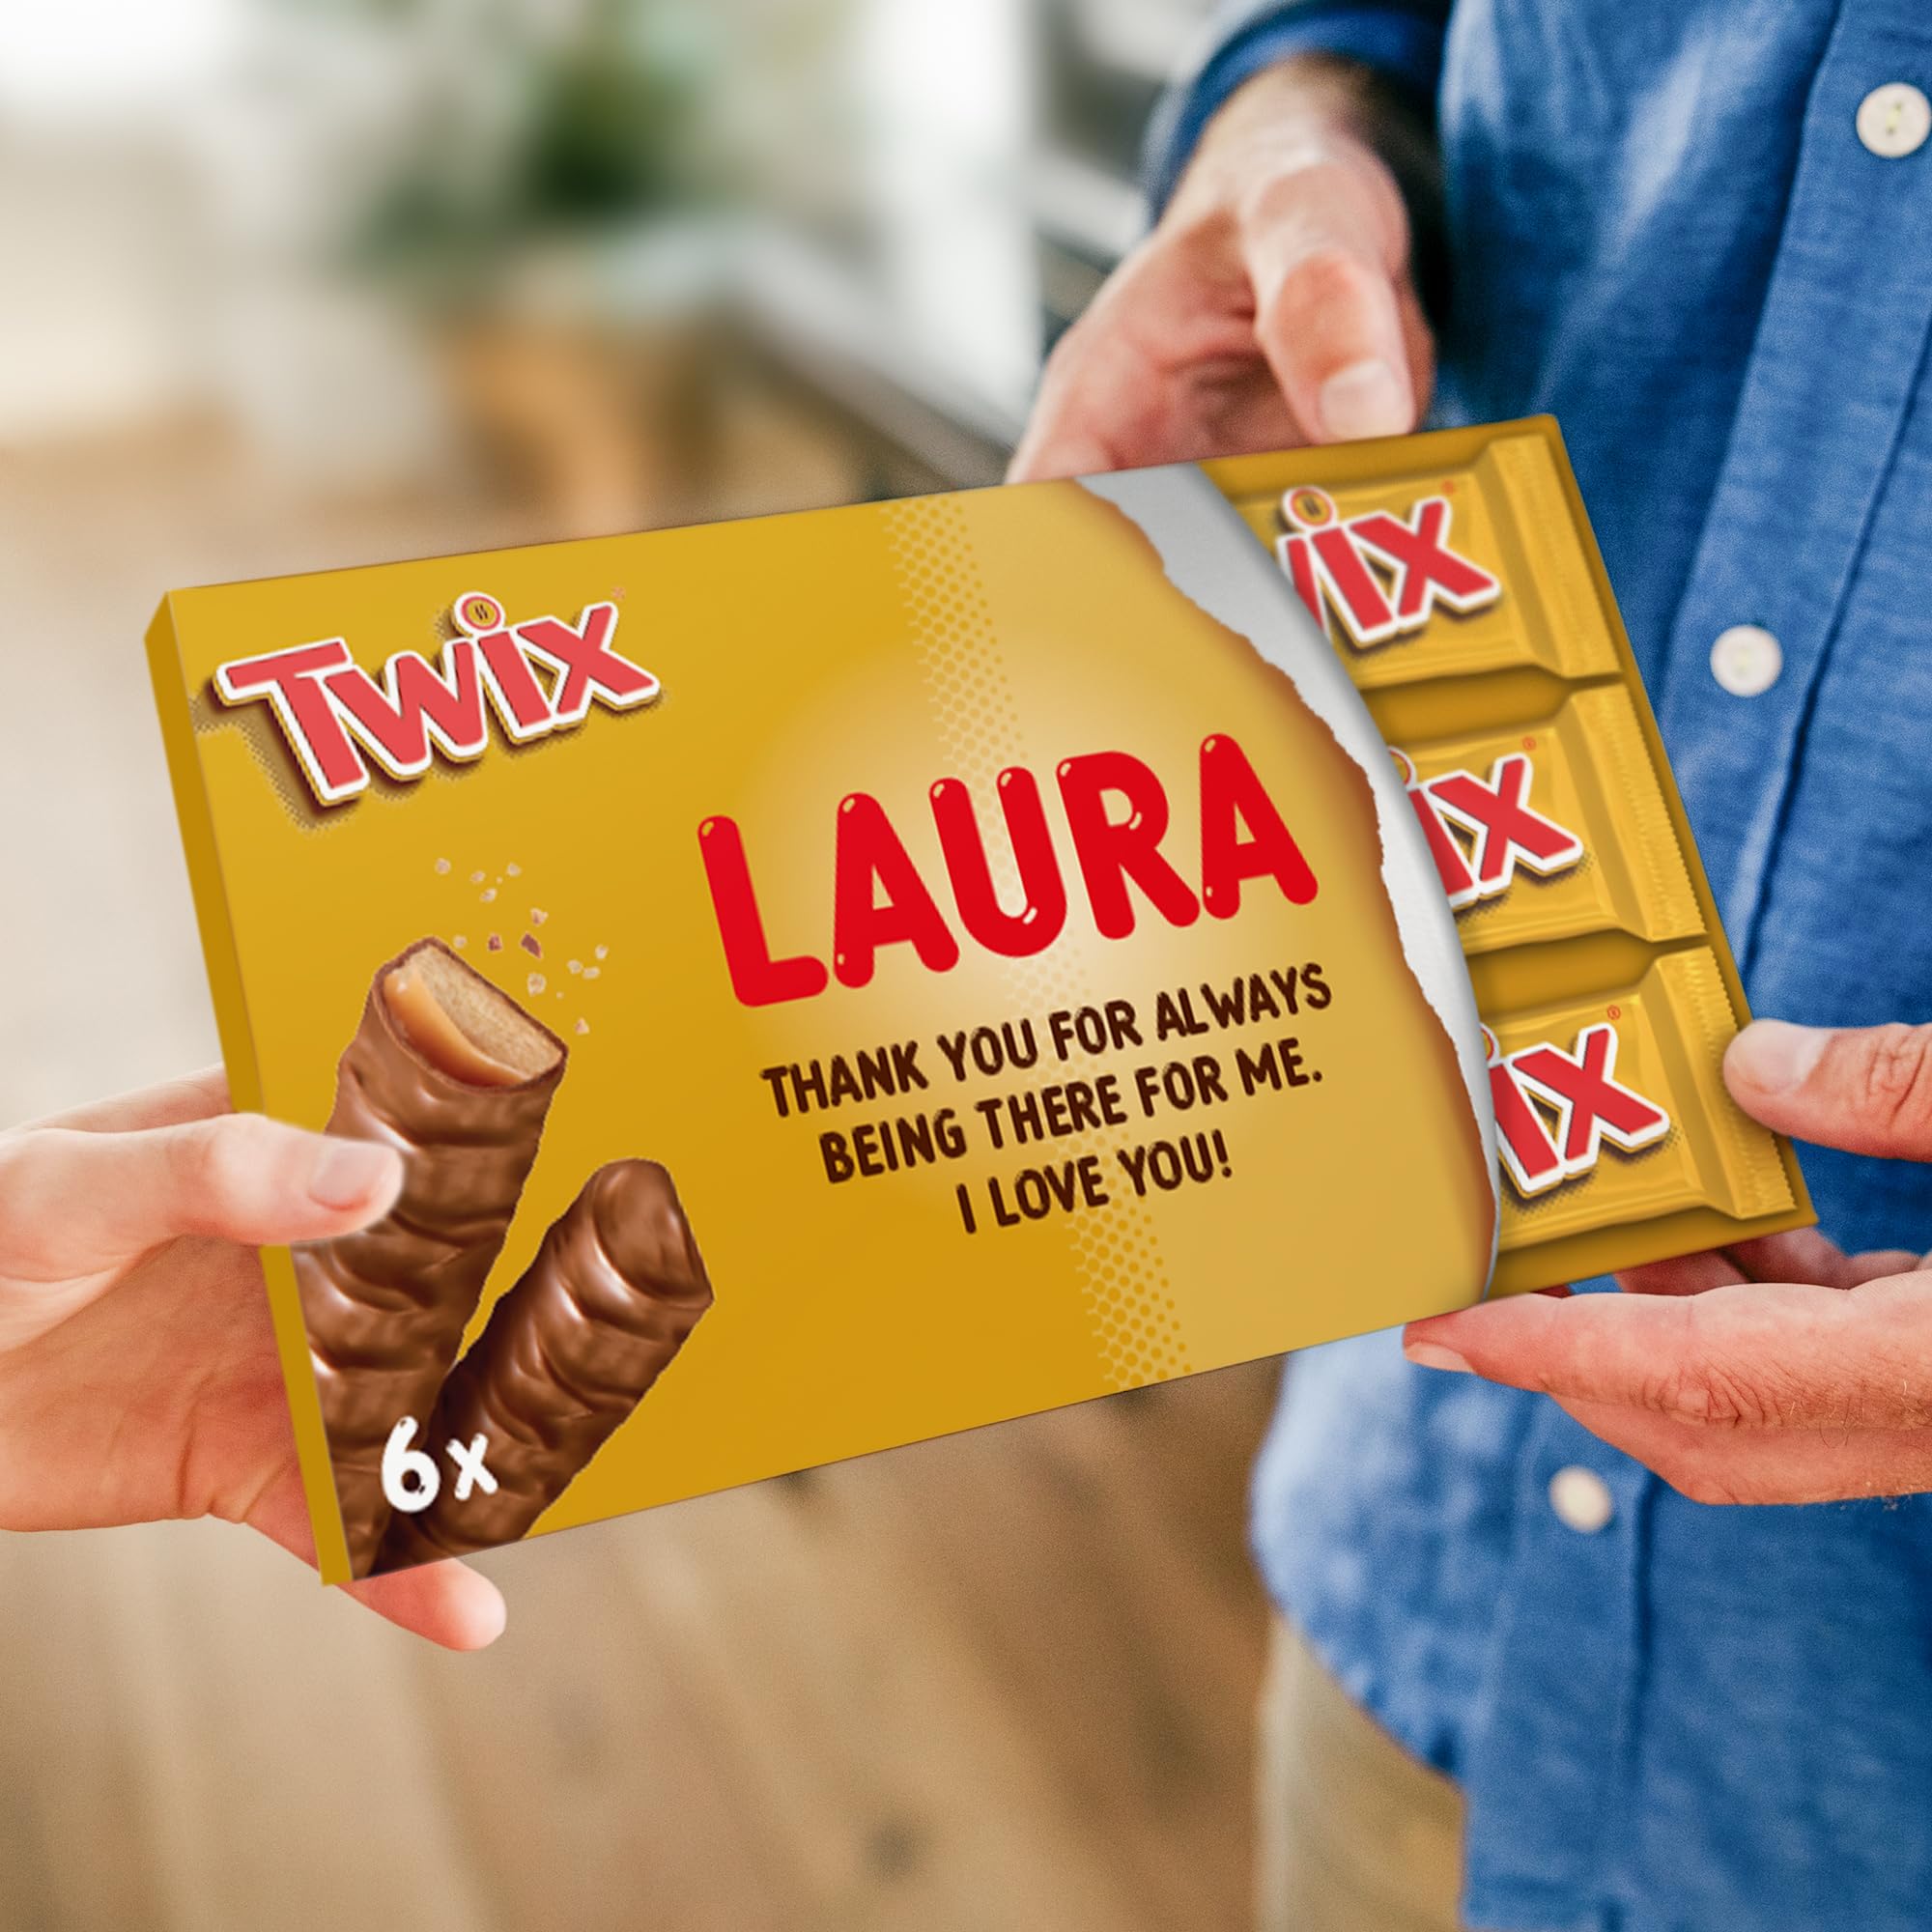 acheter Twix Barre de chocolat personnalisée - Personnalisez votre boîte cadeau géante de chocolat au lait, le cadeau pour les femmes, les hommes (300 grammes) k1EjYniMA mode